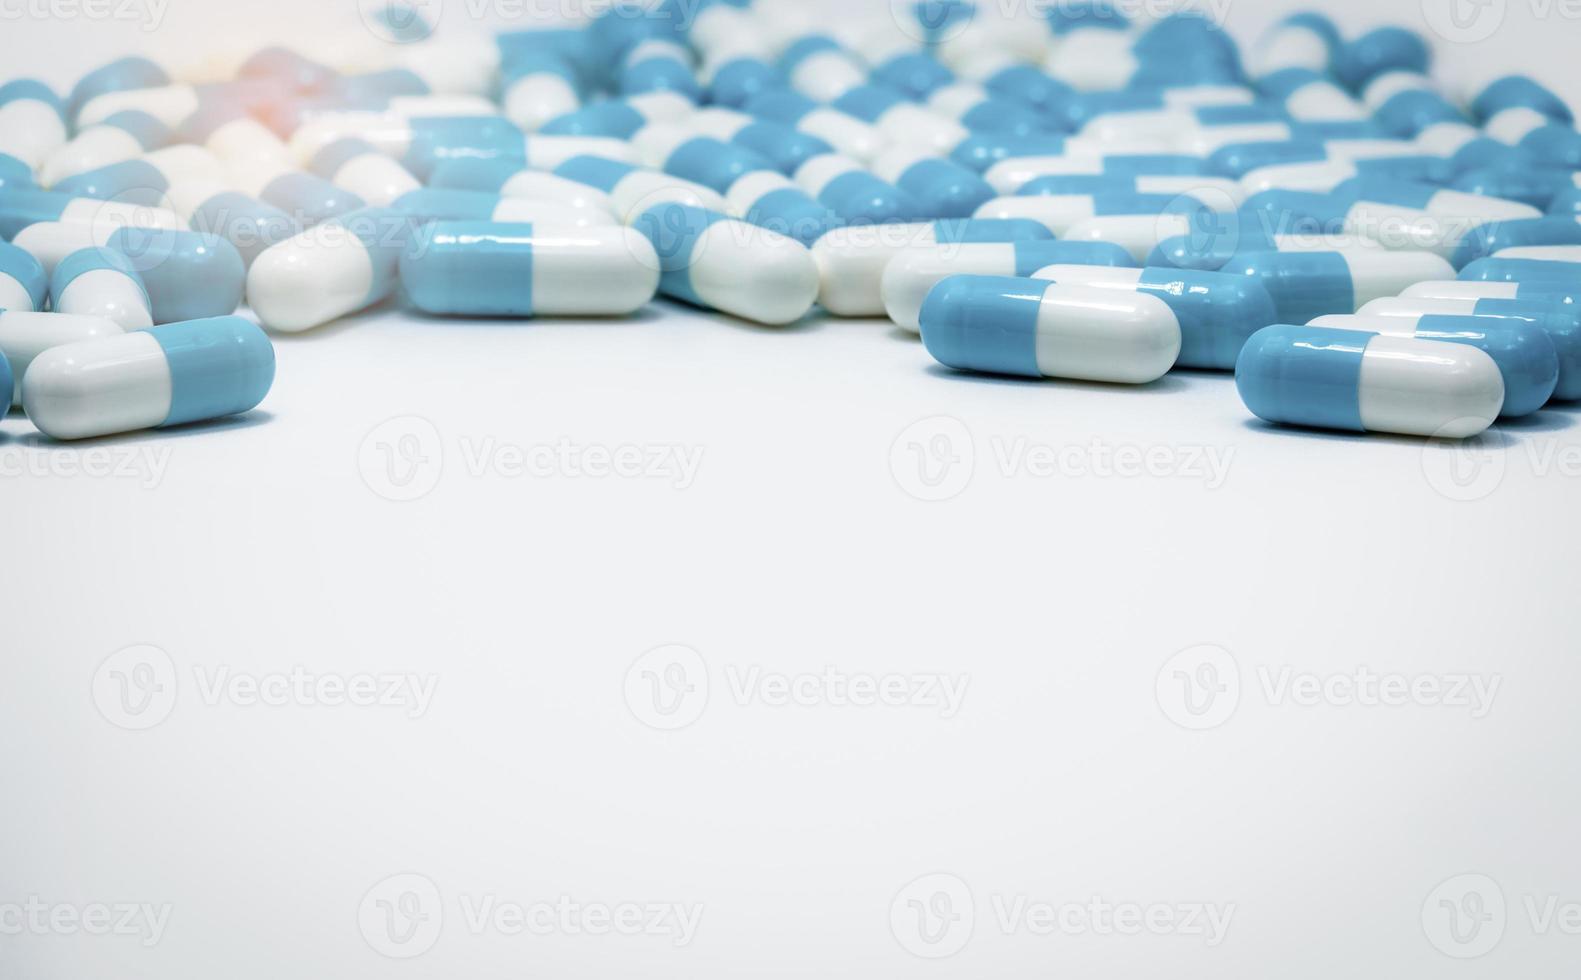 selektivt fokus på blå och vita kapslar piller på vit bakgrund. antibiotikaresistens. antimikrobiella kapselpiller. läkemedelsindustri. apoteksprodukter. farmaci. foto